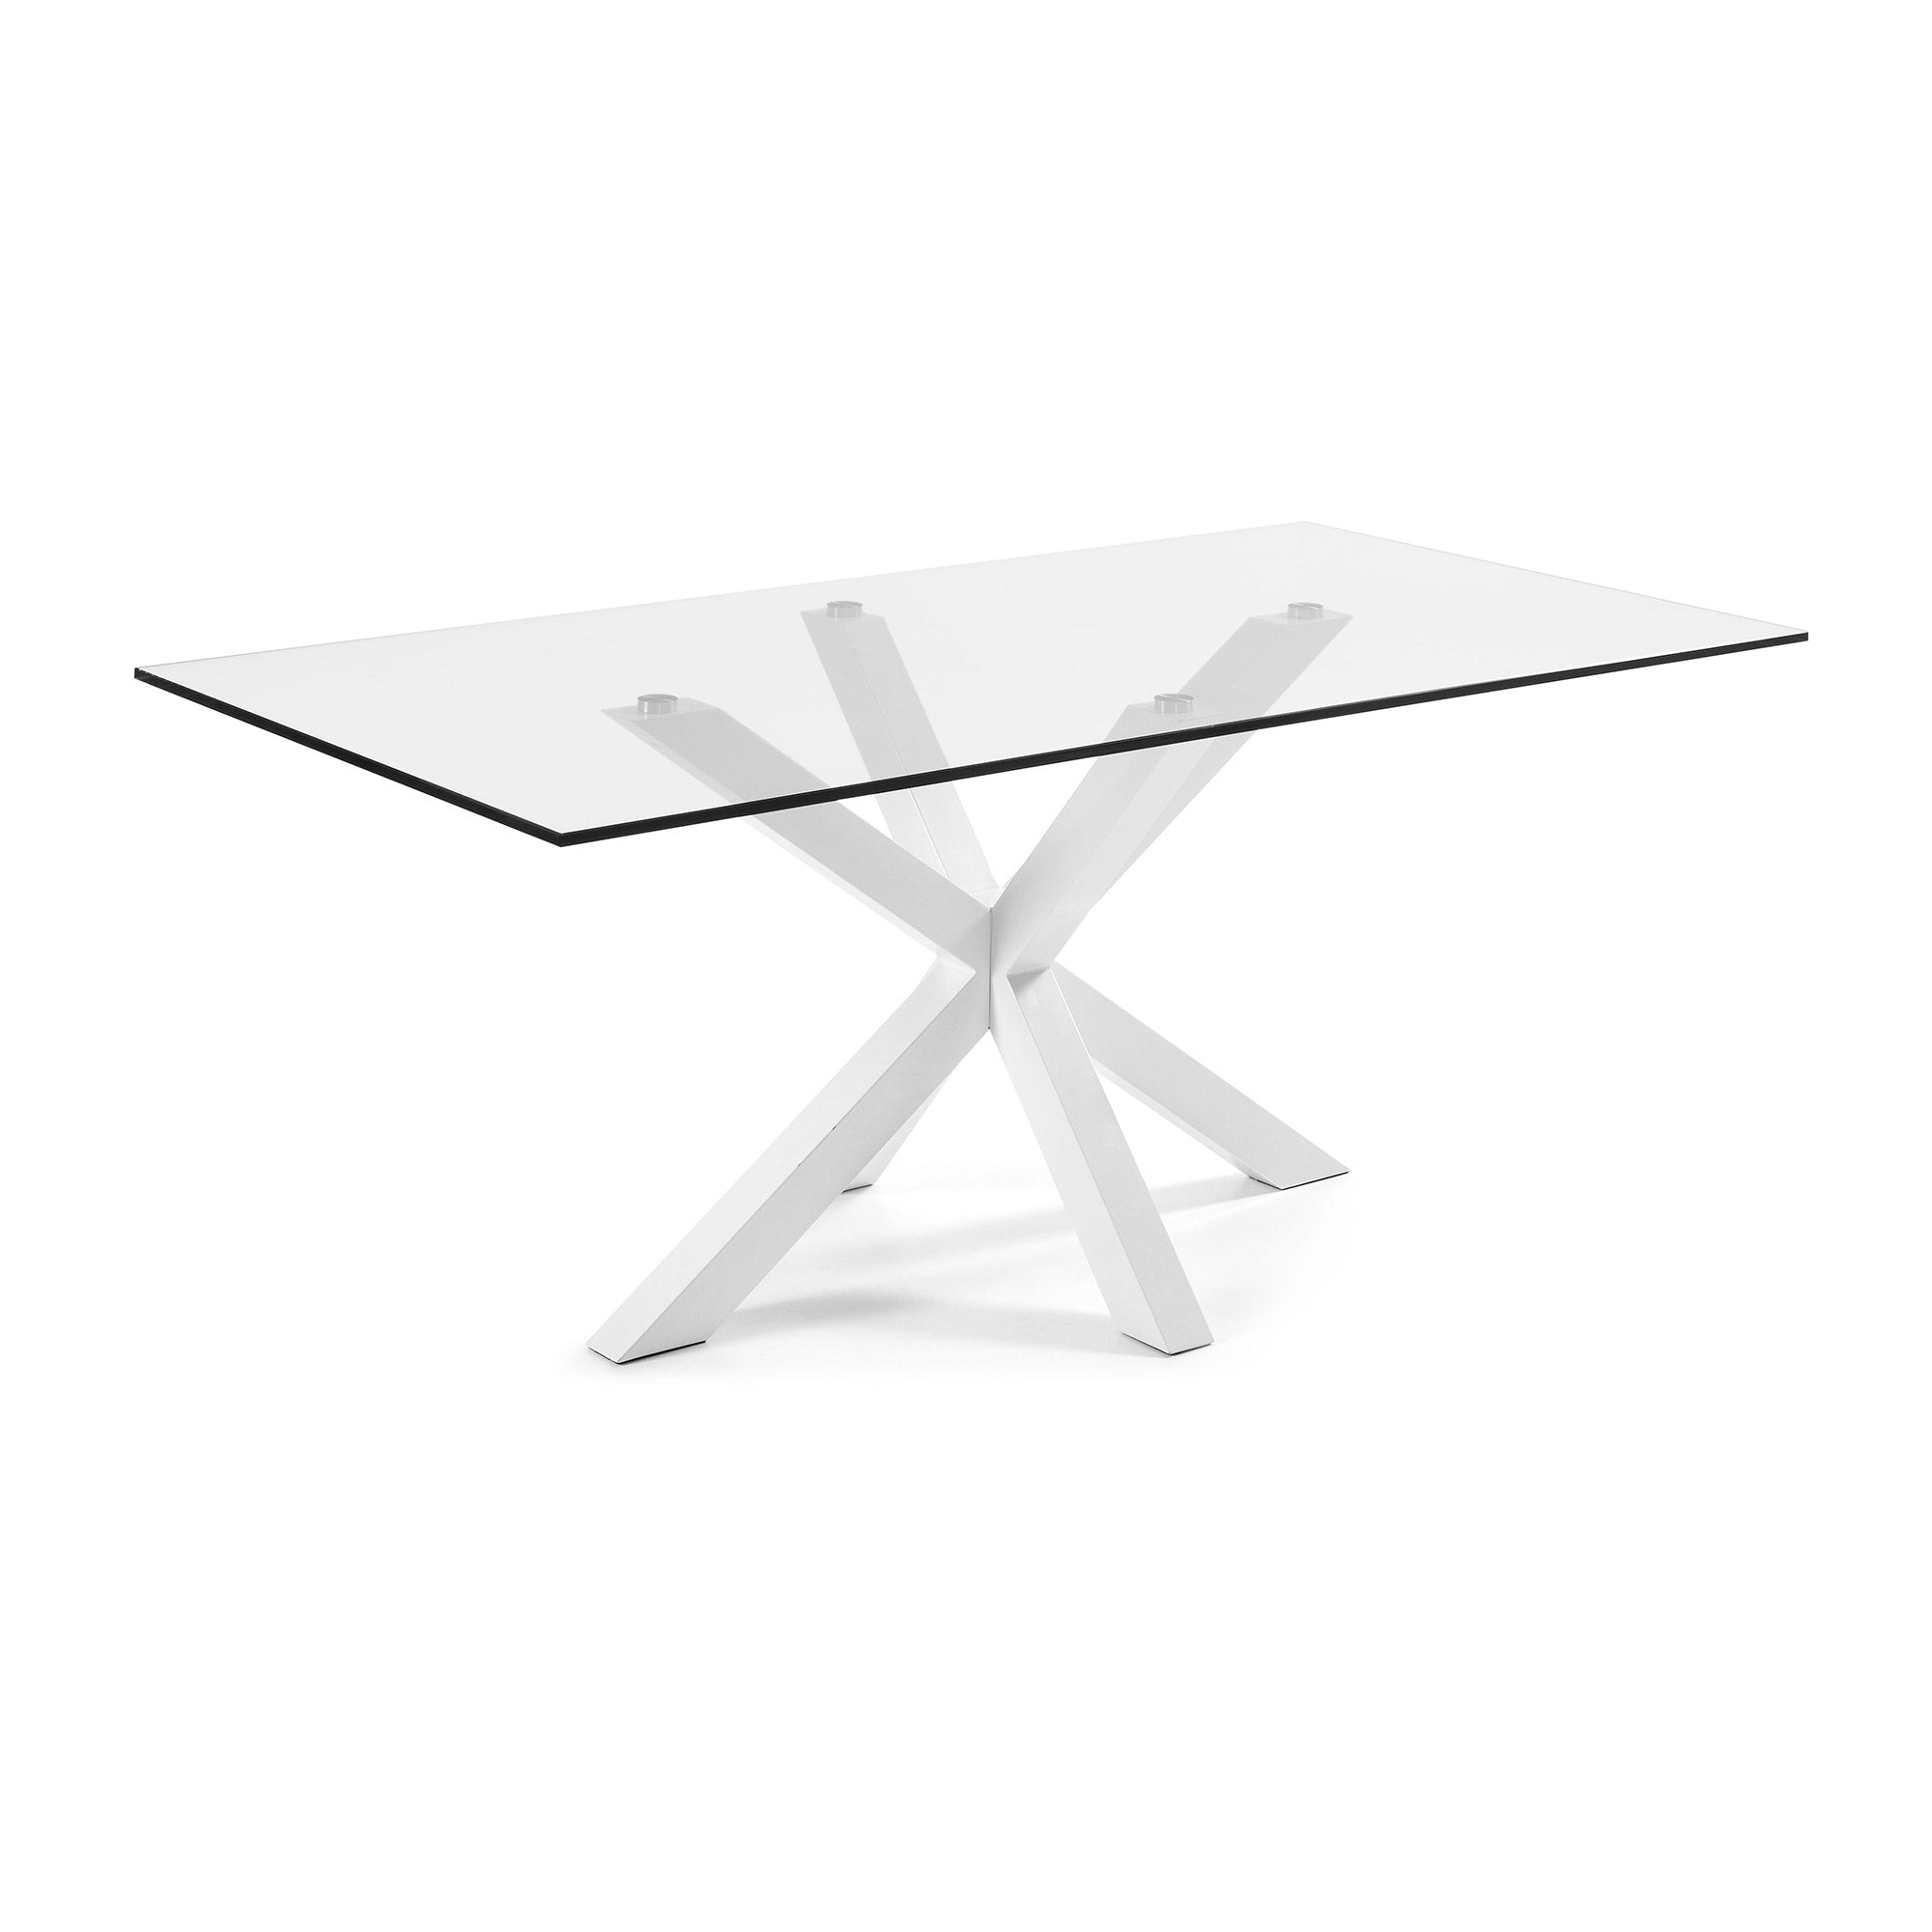 Argo üvegasztal acéllábakkal, fehér kivitelben 200 x 100 cm